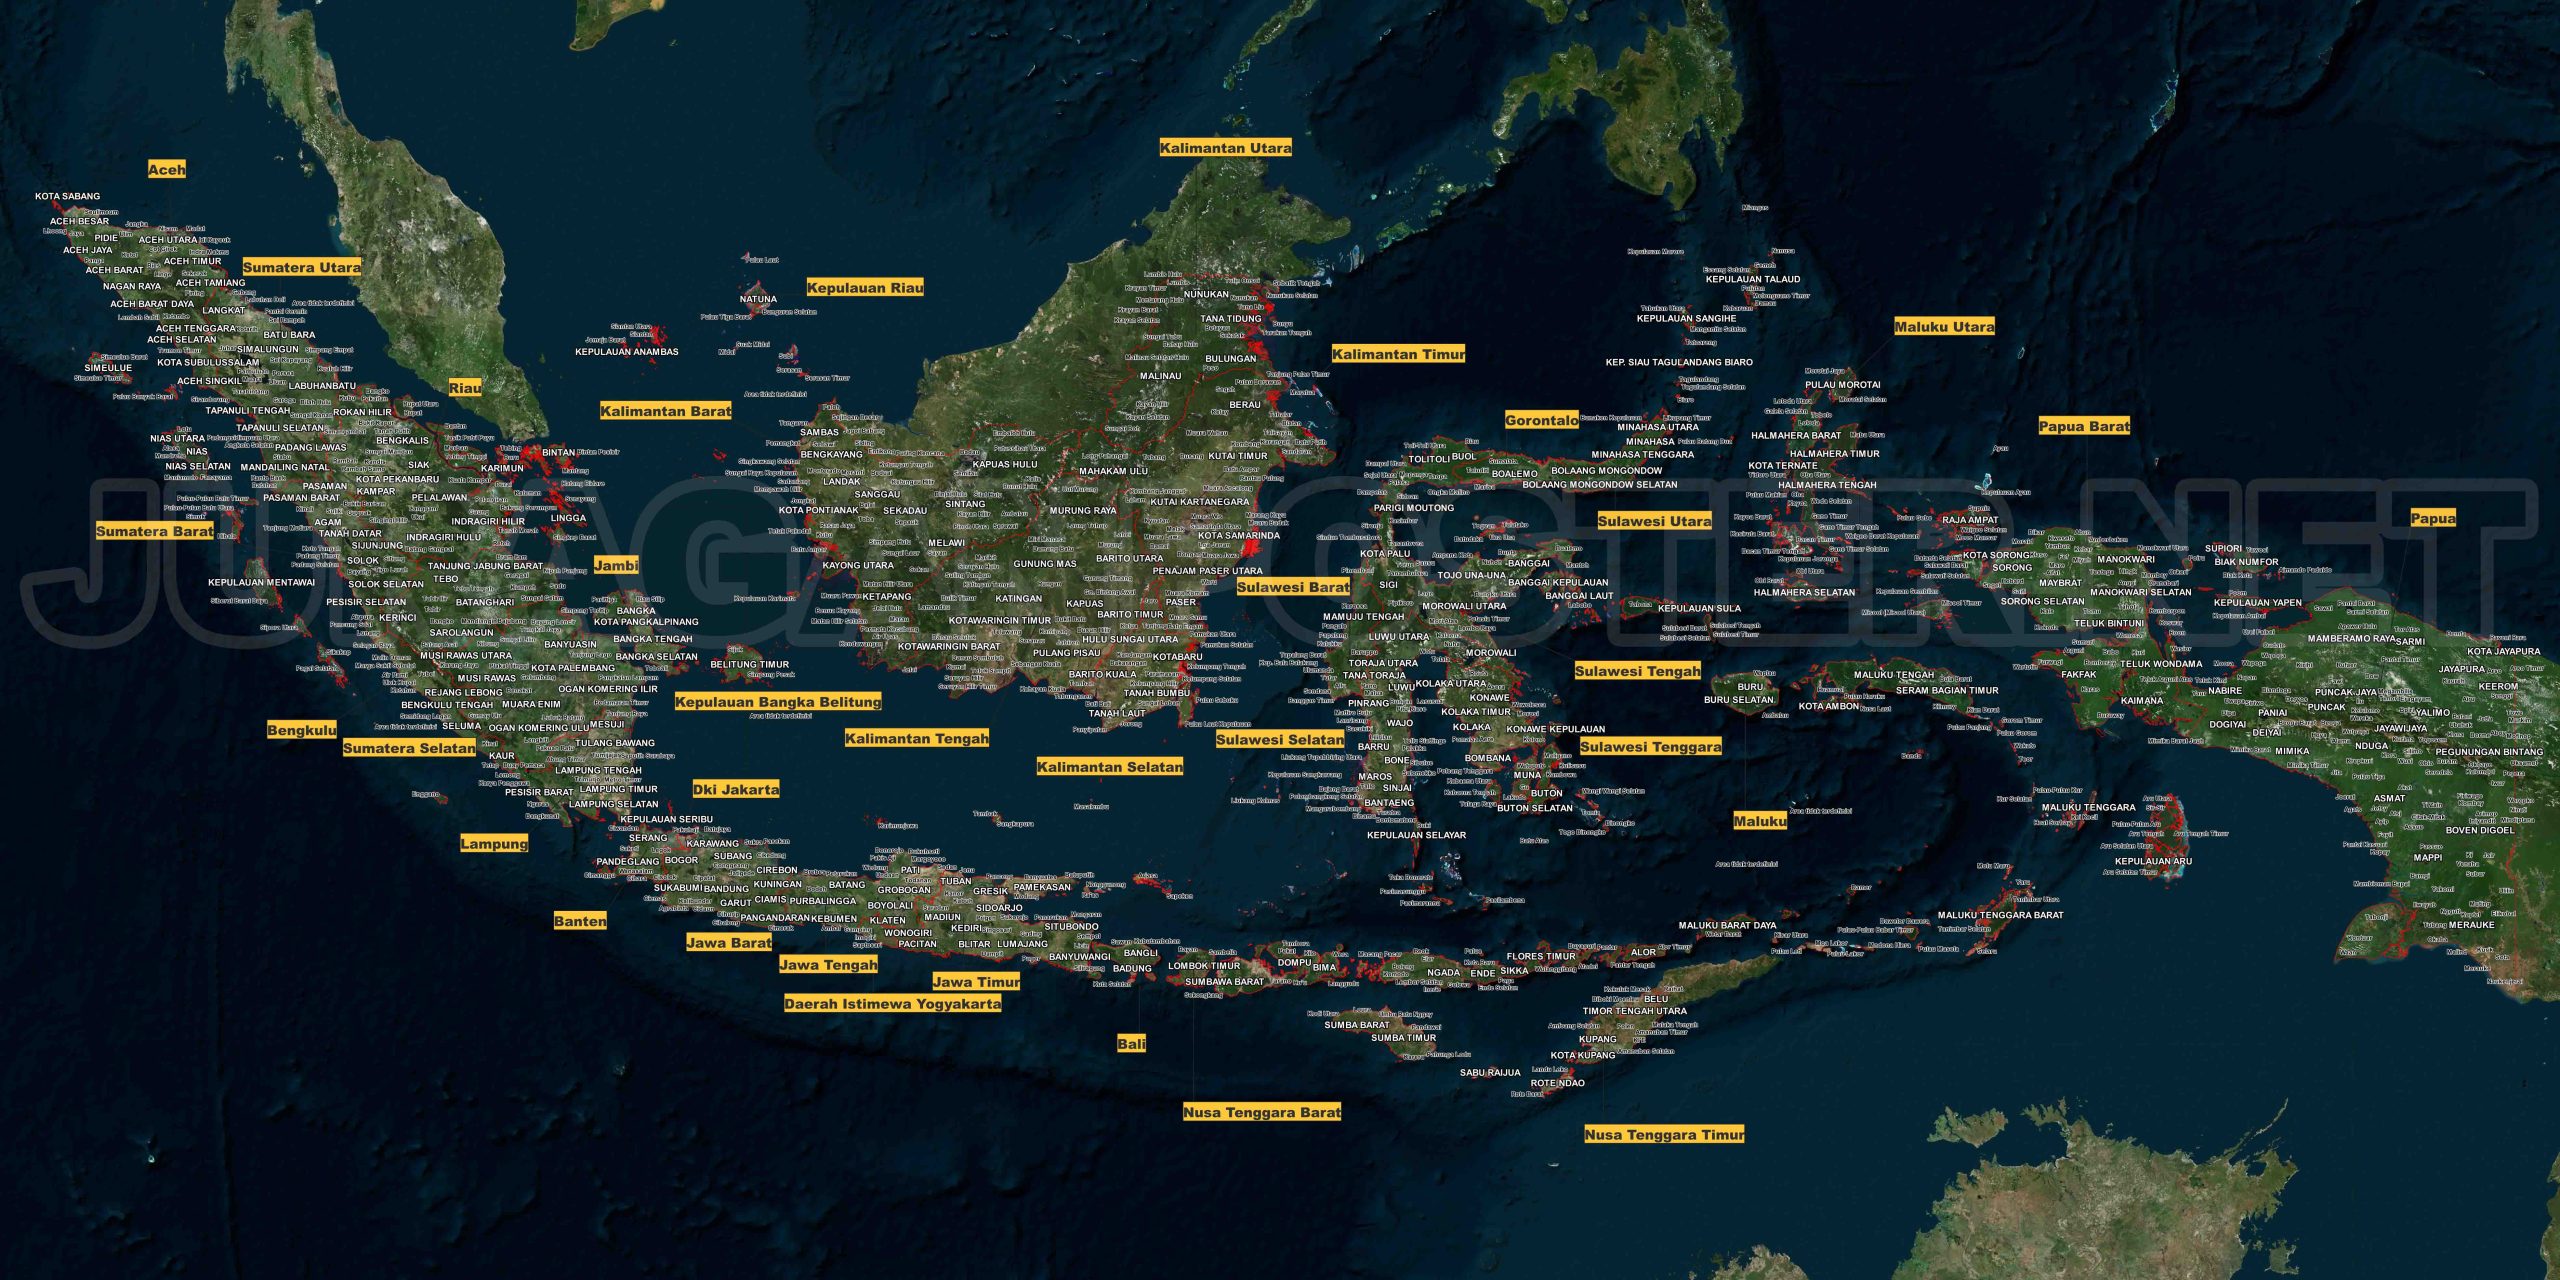 Menggambar Peta Indonesia: Kreativitas dalam Menjelajahi Nusantara